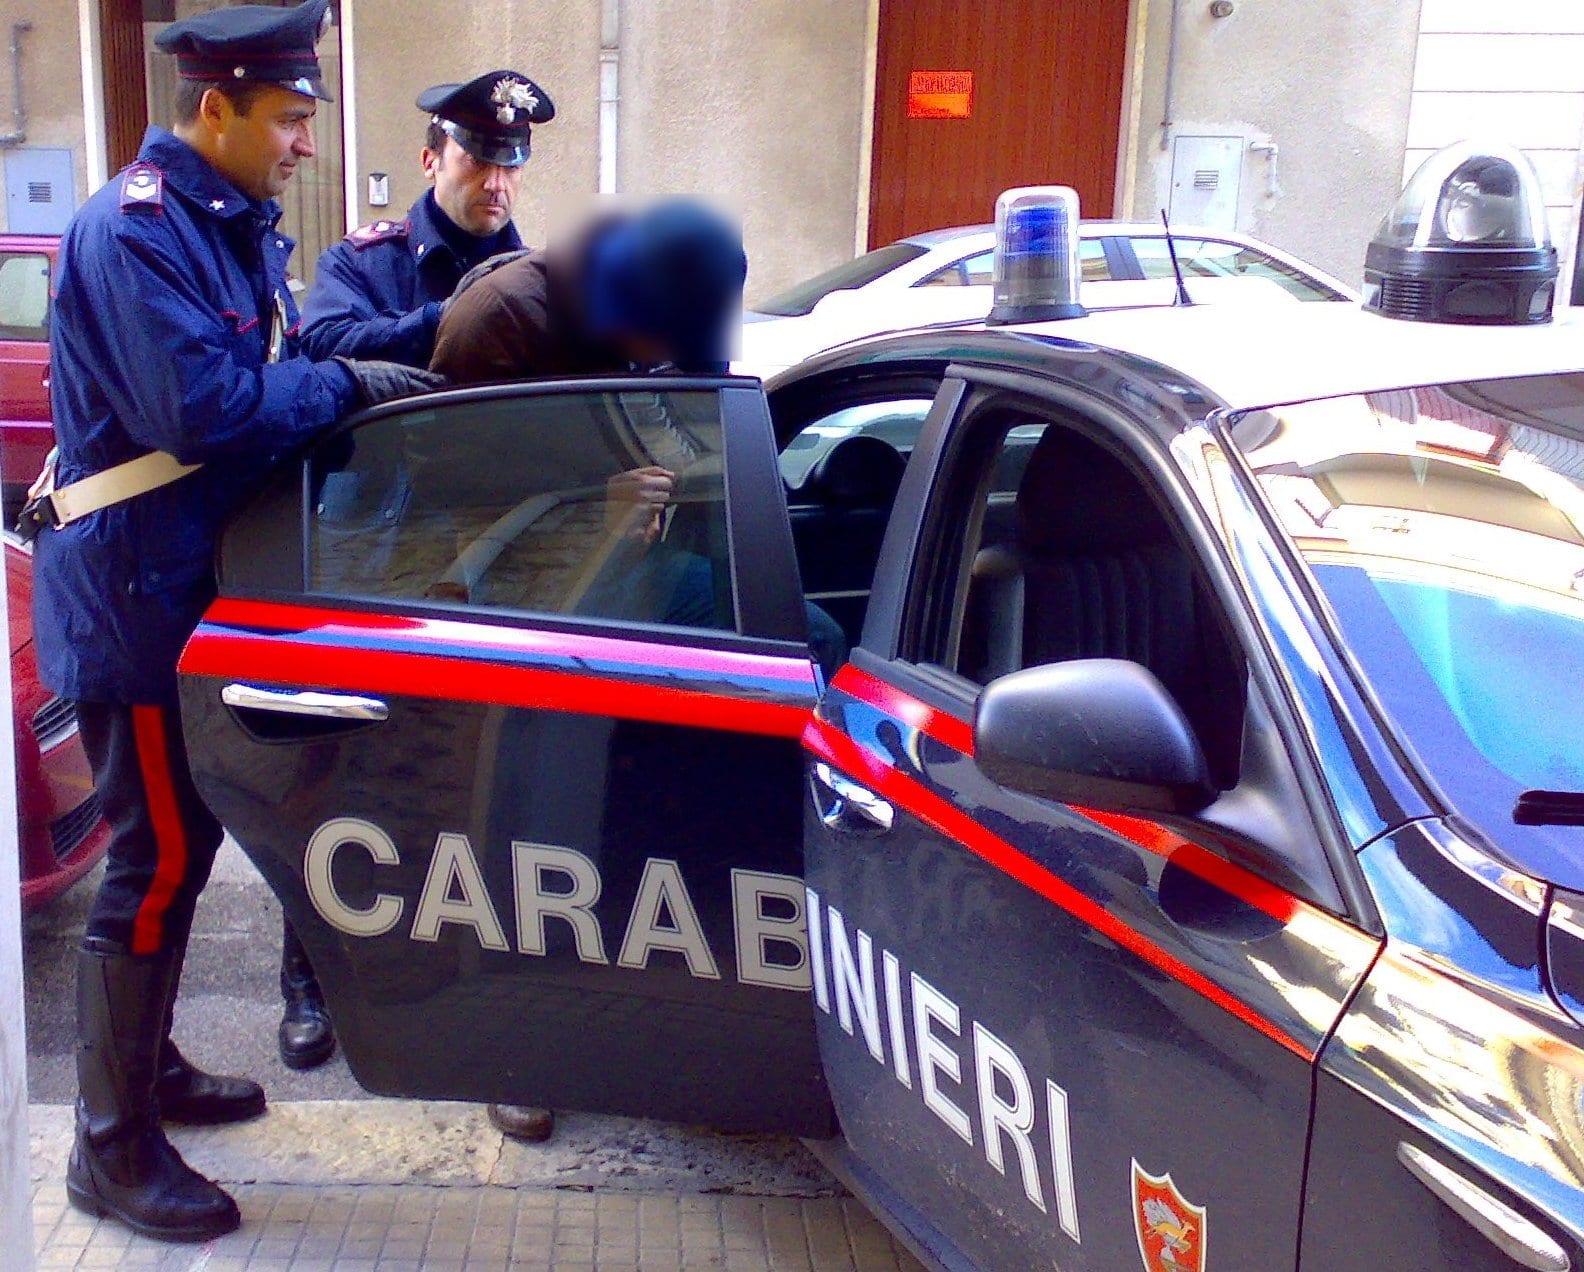 carabinieri-gazzella-arresto.jpg (1584×1272)